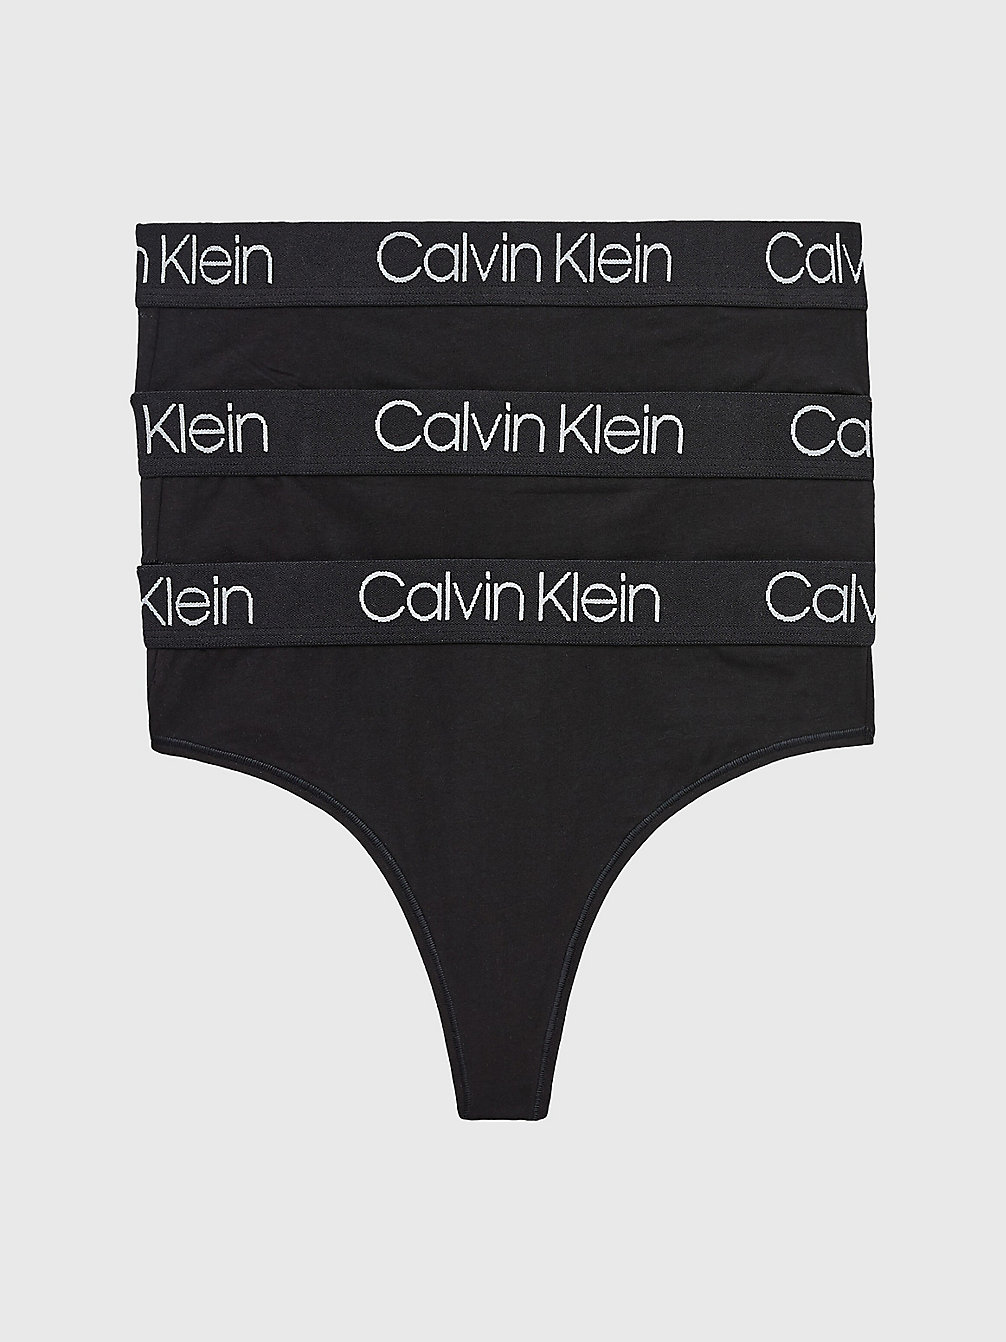 BLACK/ BLACK/ BLACK 3er-Pack High-Waist-Strings - Body undefined Damen Calvin Klein